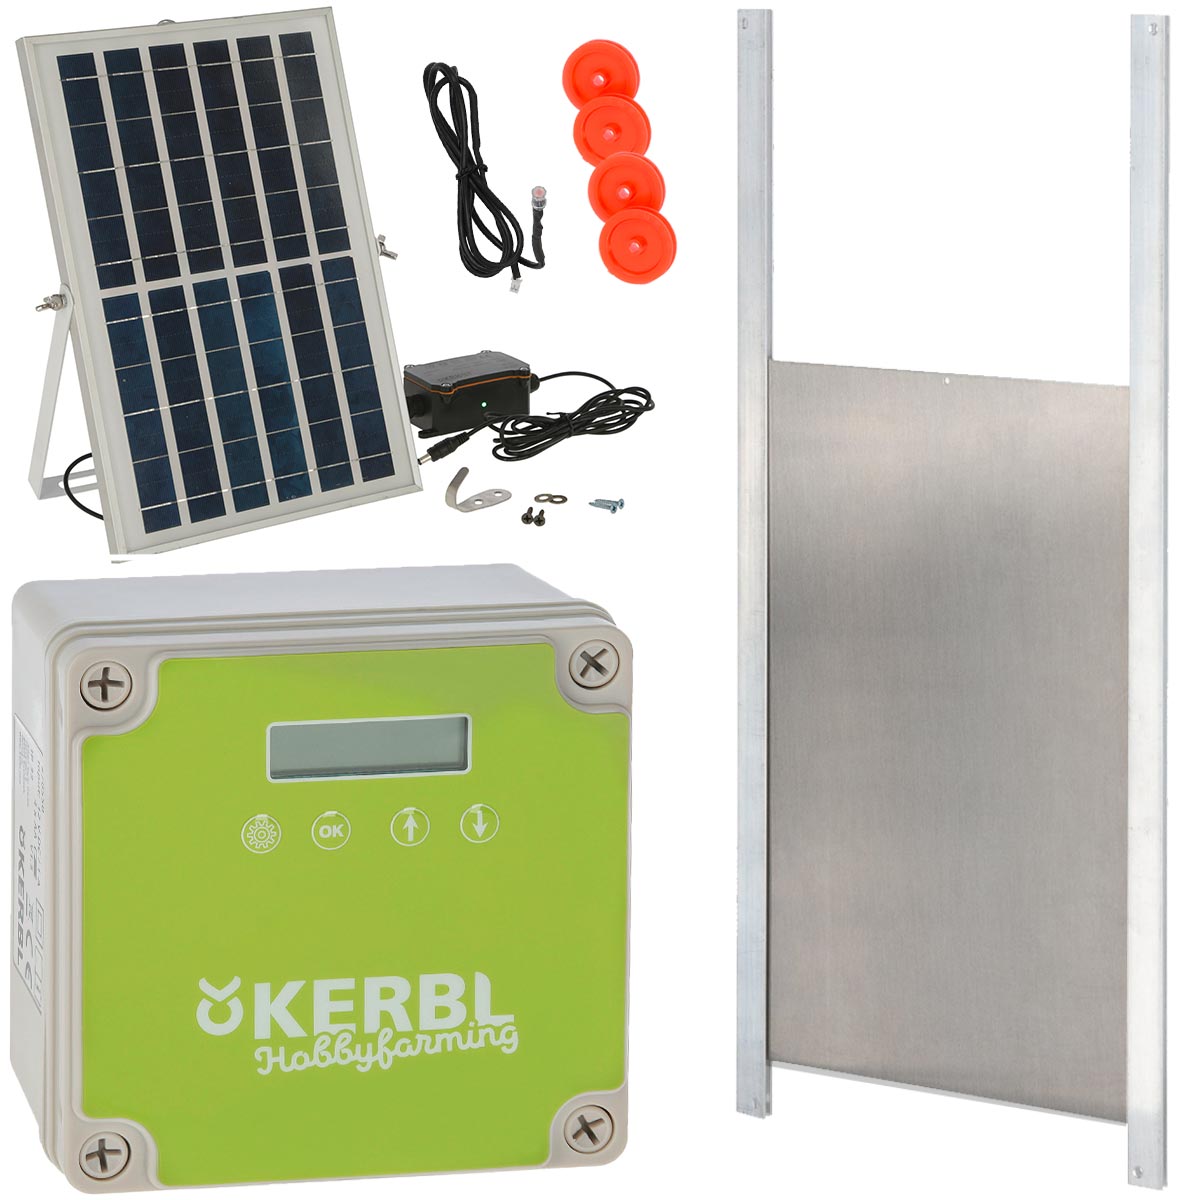 Porte de poulailler èlectrique solaire Kerbl sans porte